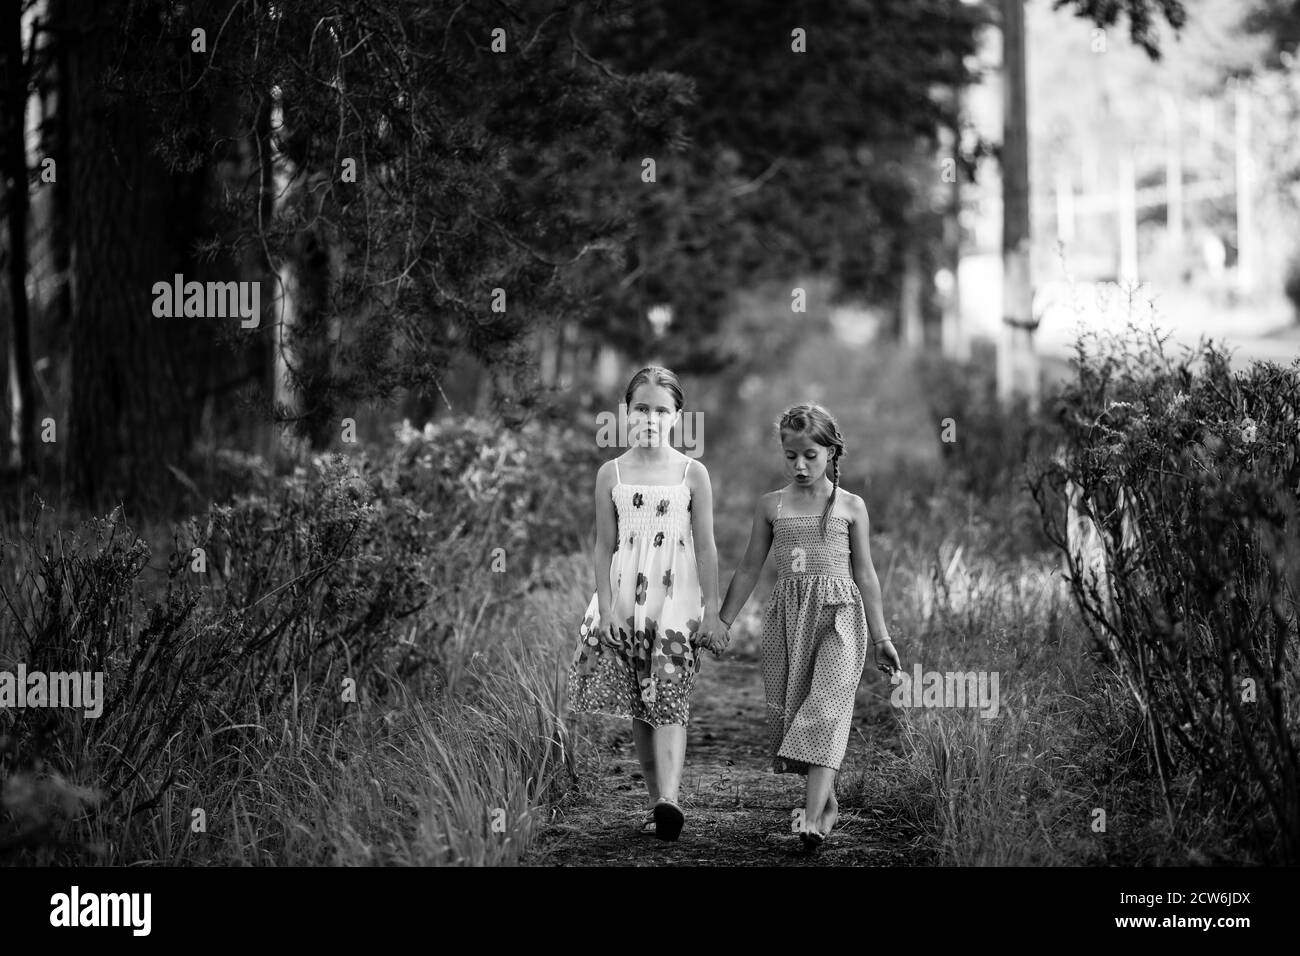 Deux jeunes filles de dix ans marchent dans le parc. Photo en noir et blanc. Banque D'Images